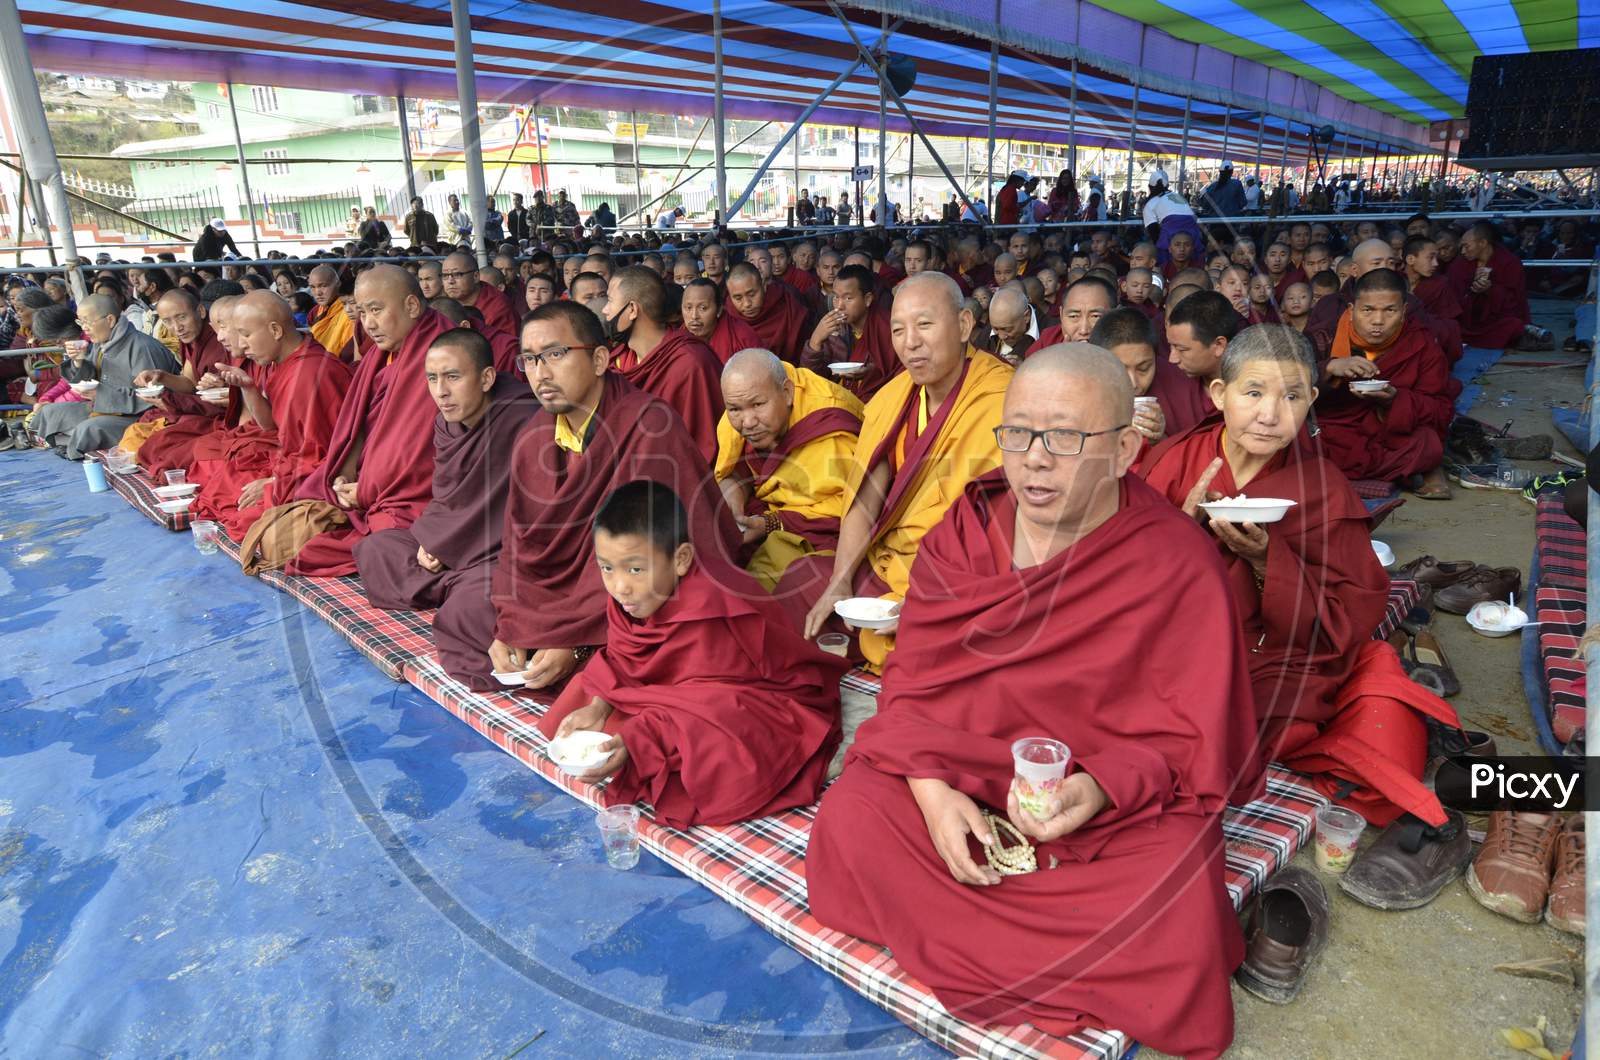 Monks wait for the arrival of Tibetan spiritual leader Dalai Lama at the Tawang Monastery